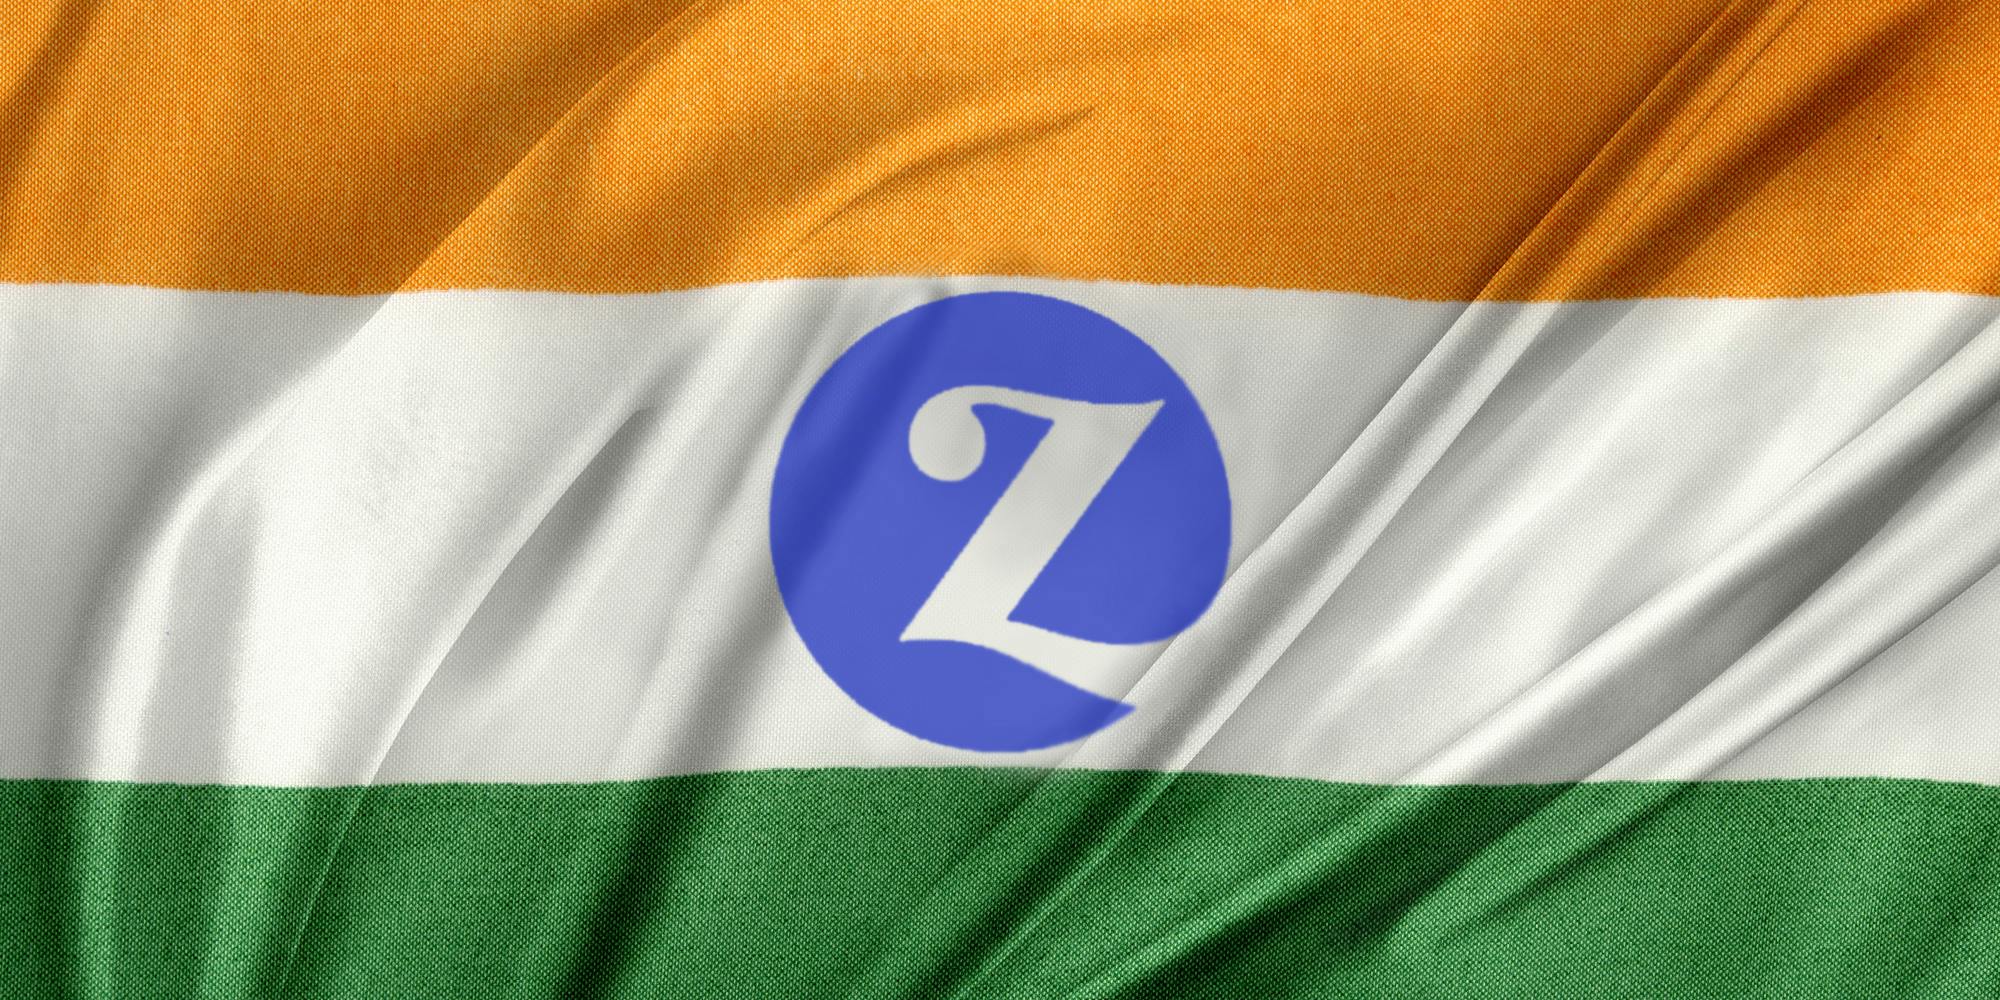 Zivame logo on India flag